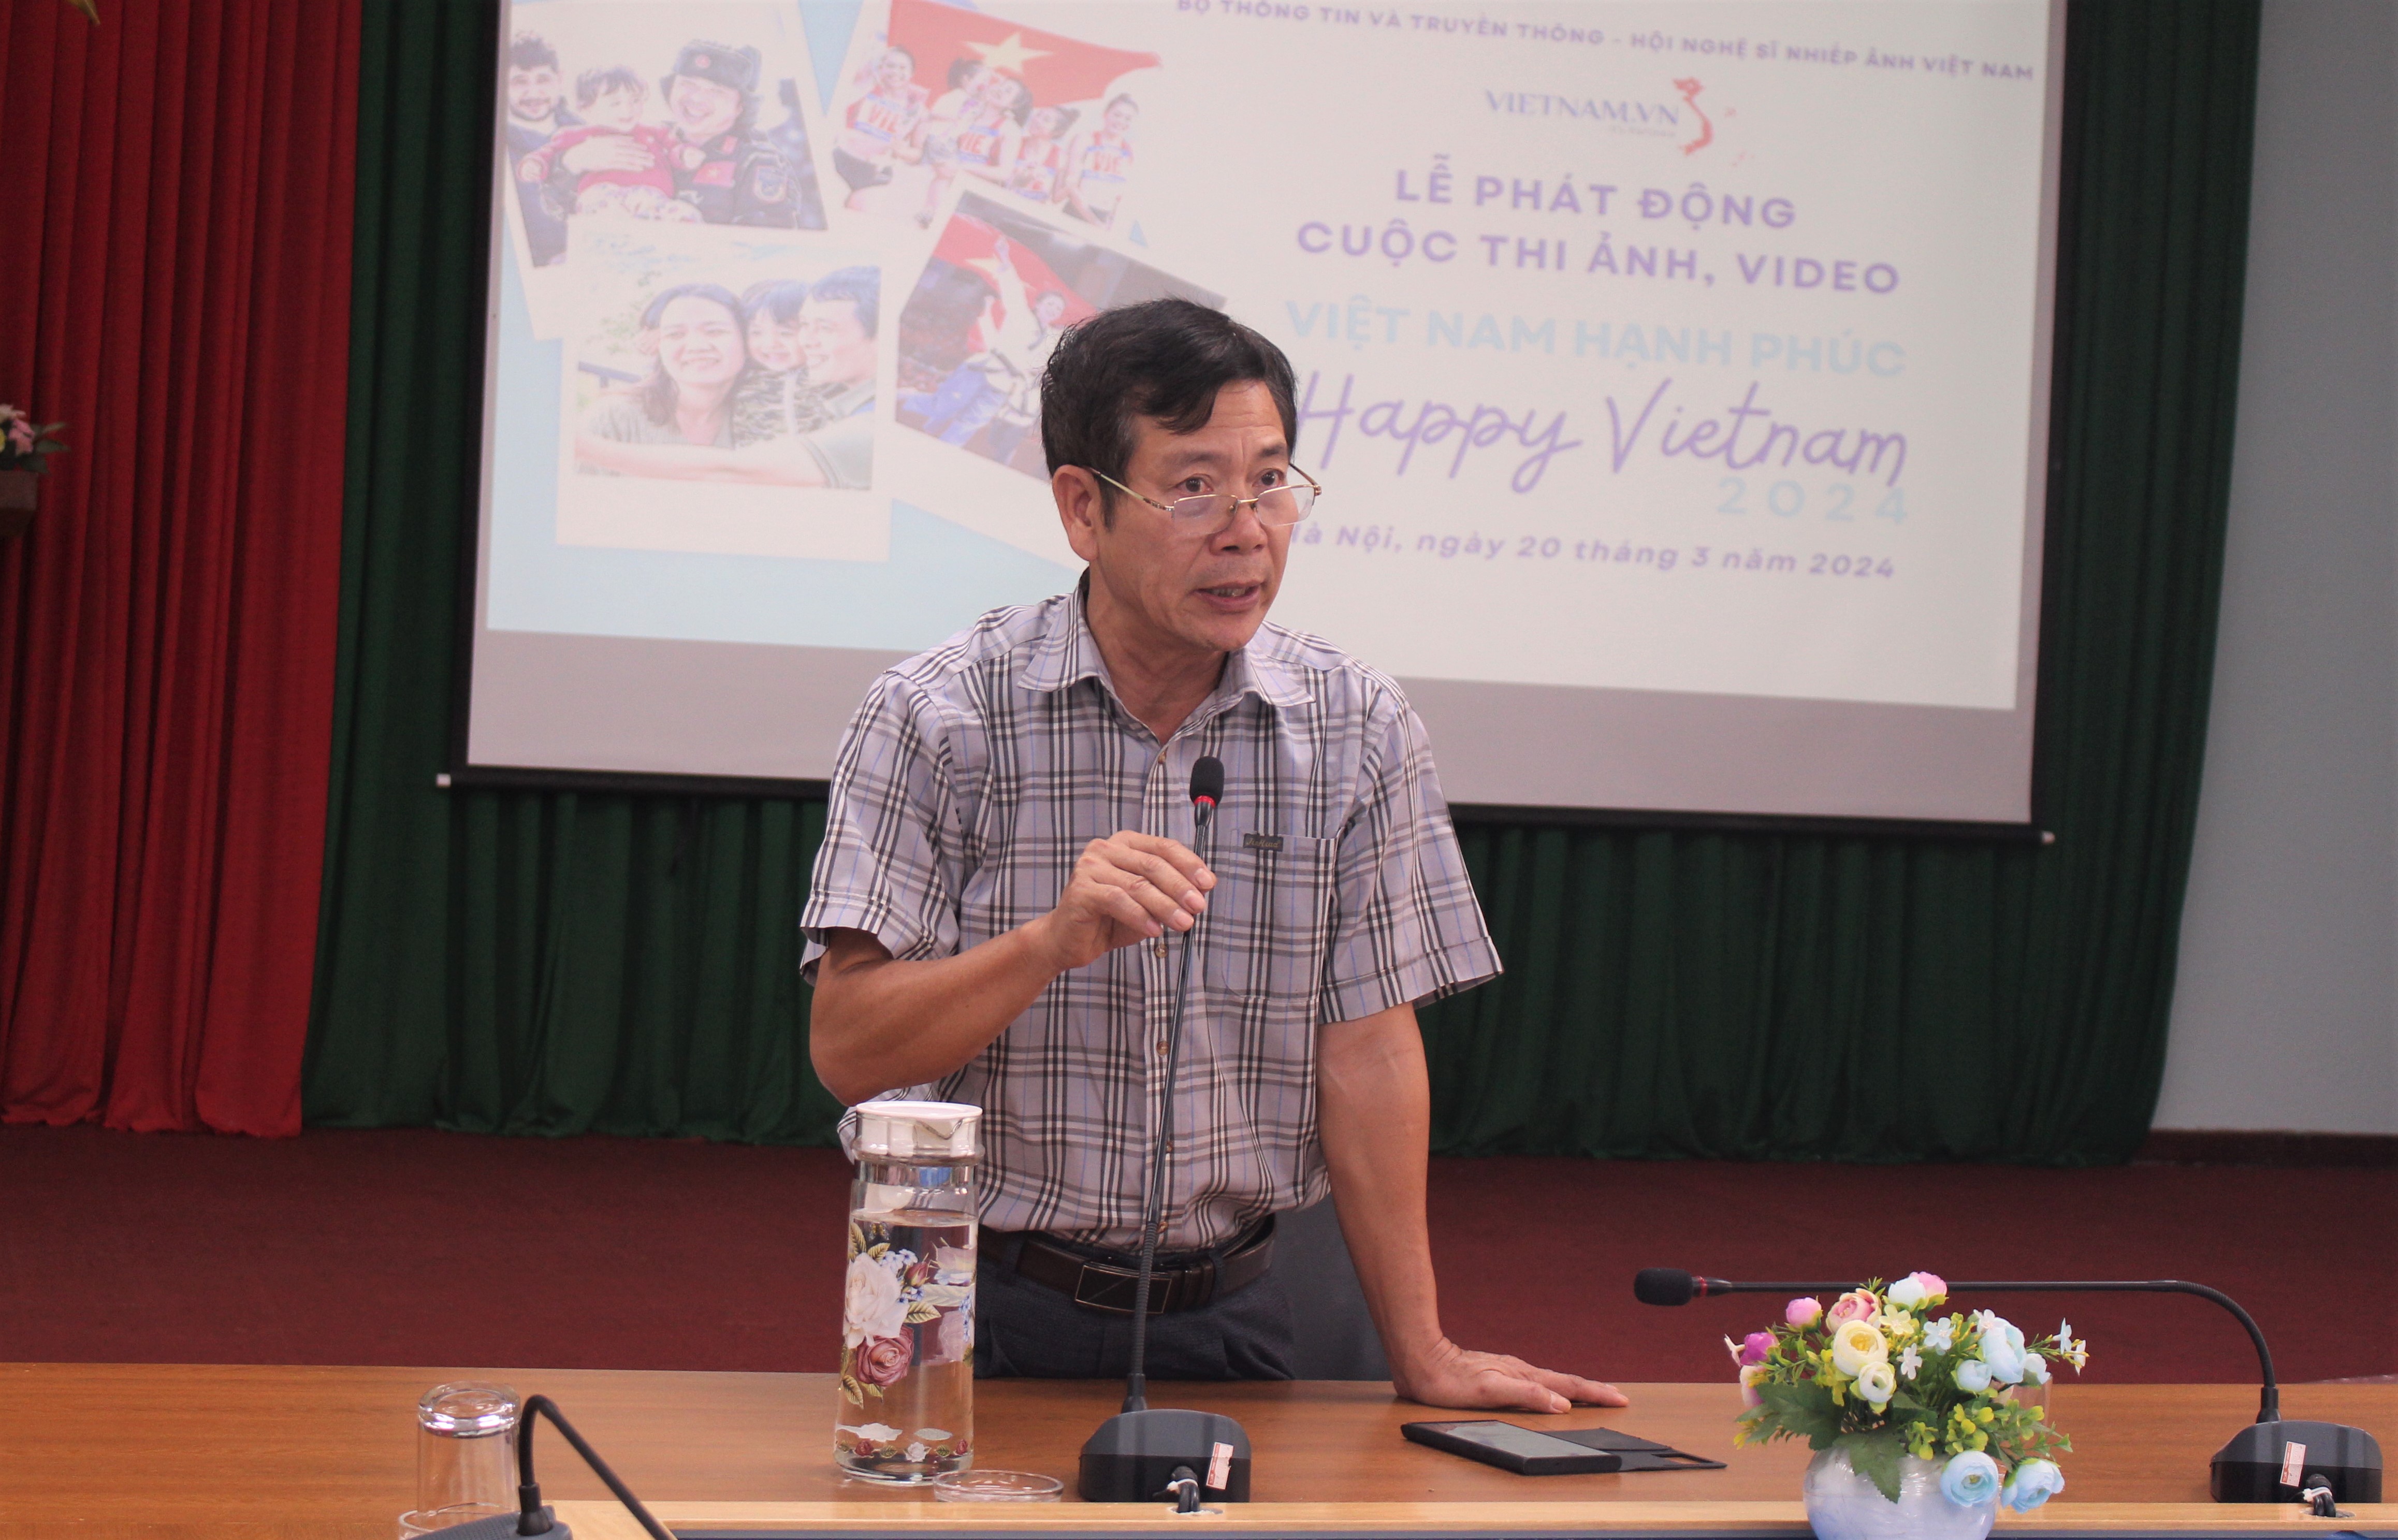 Khởi động Cuộc thi ảnh, video "Việt Nam hạnh phúc - Happy Vietnam" 2024- Ảnh 2.